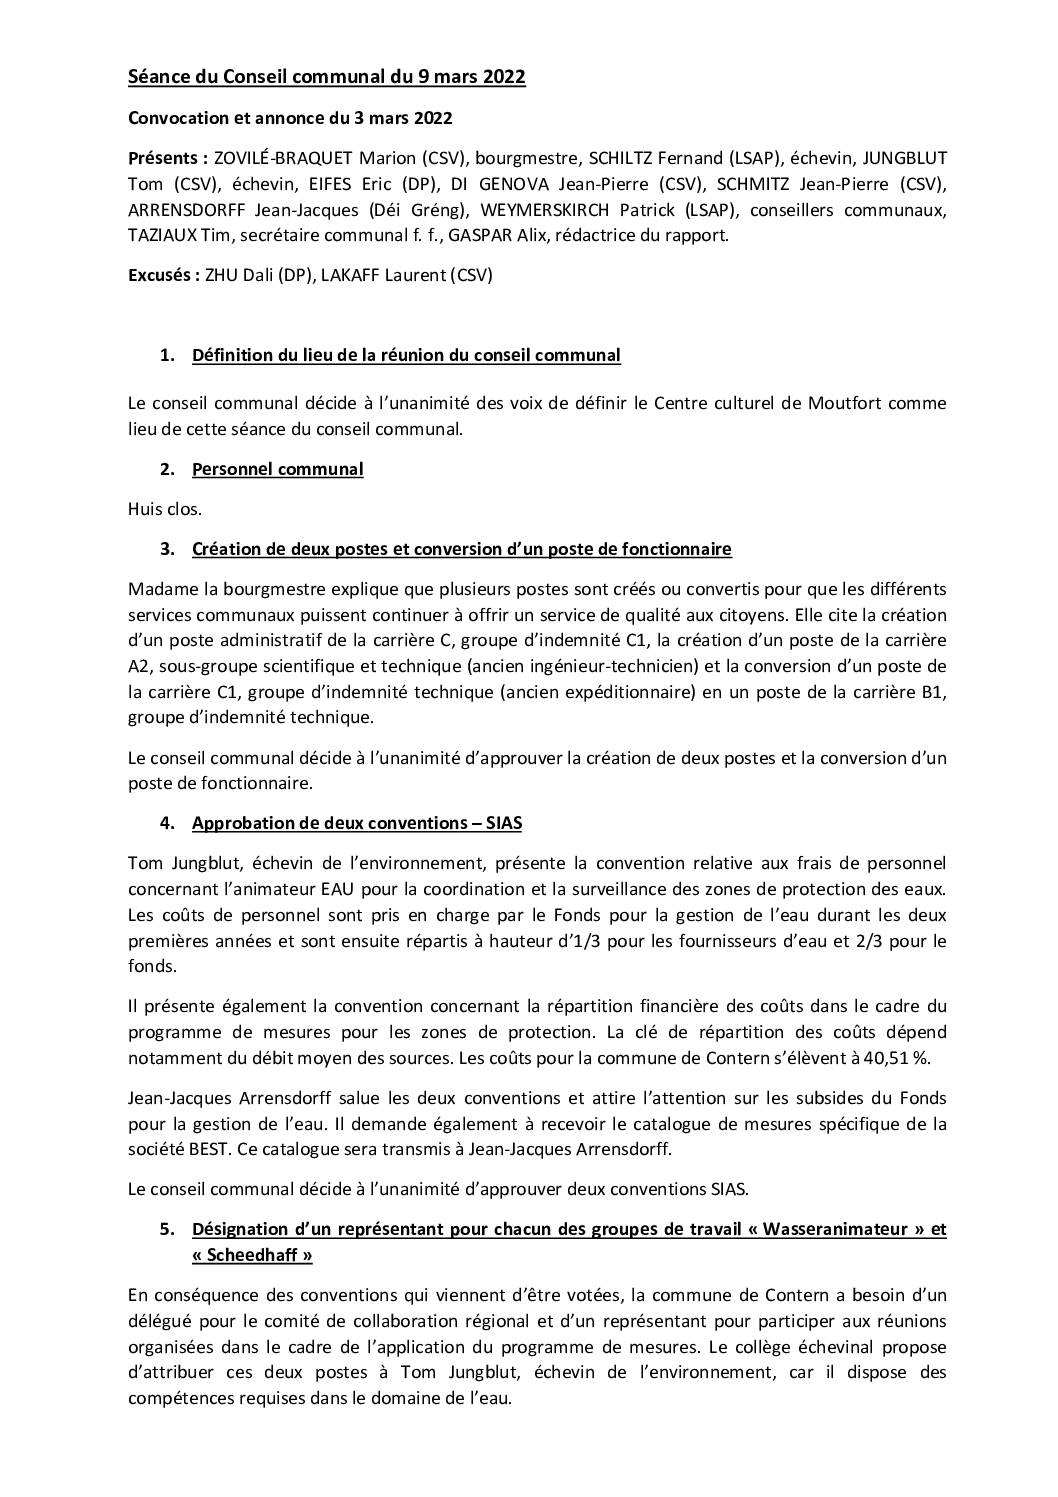 2022-03-09-Rapport-du-Conseil-communal